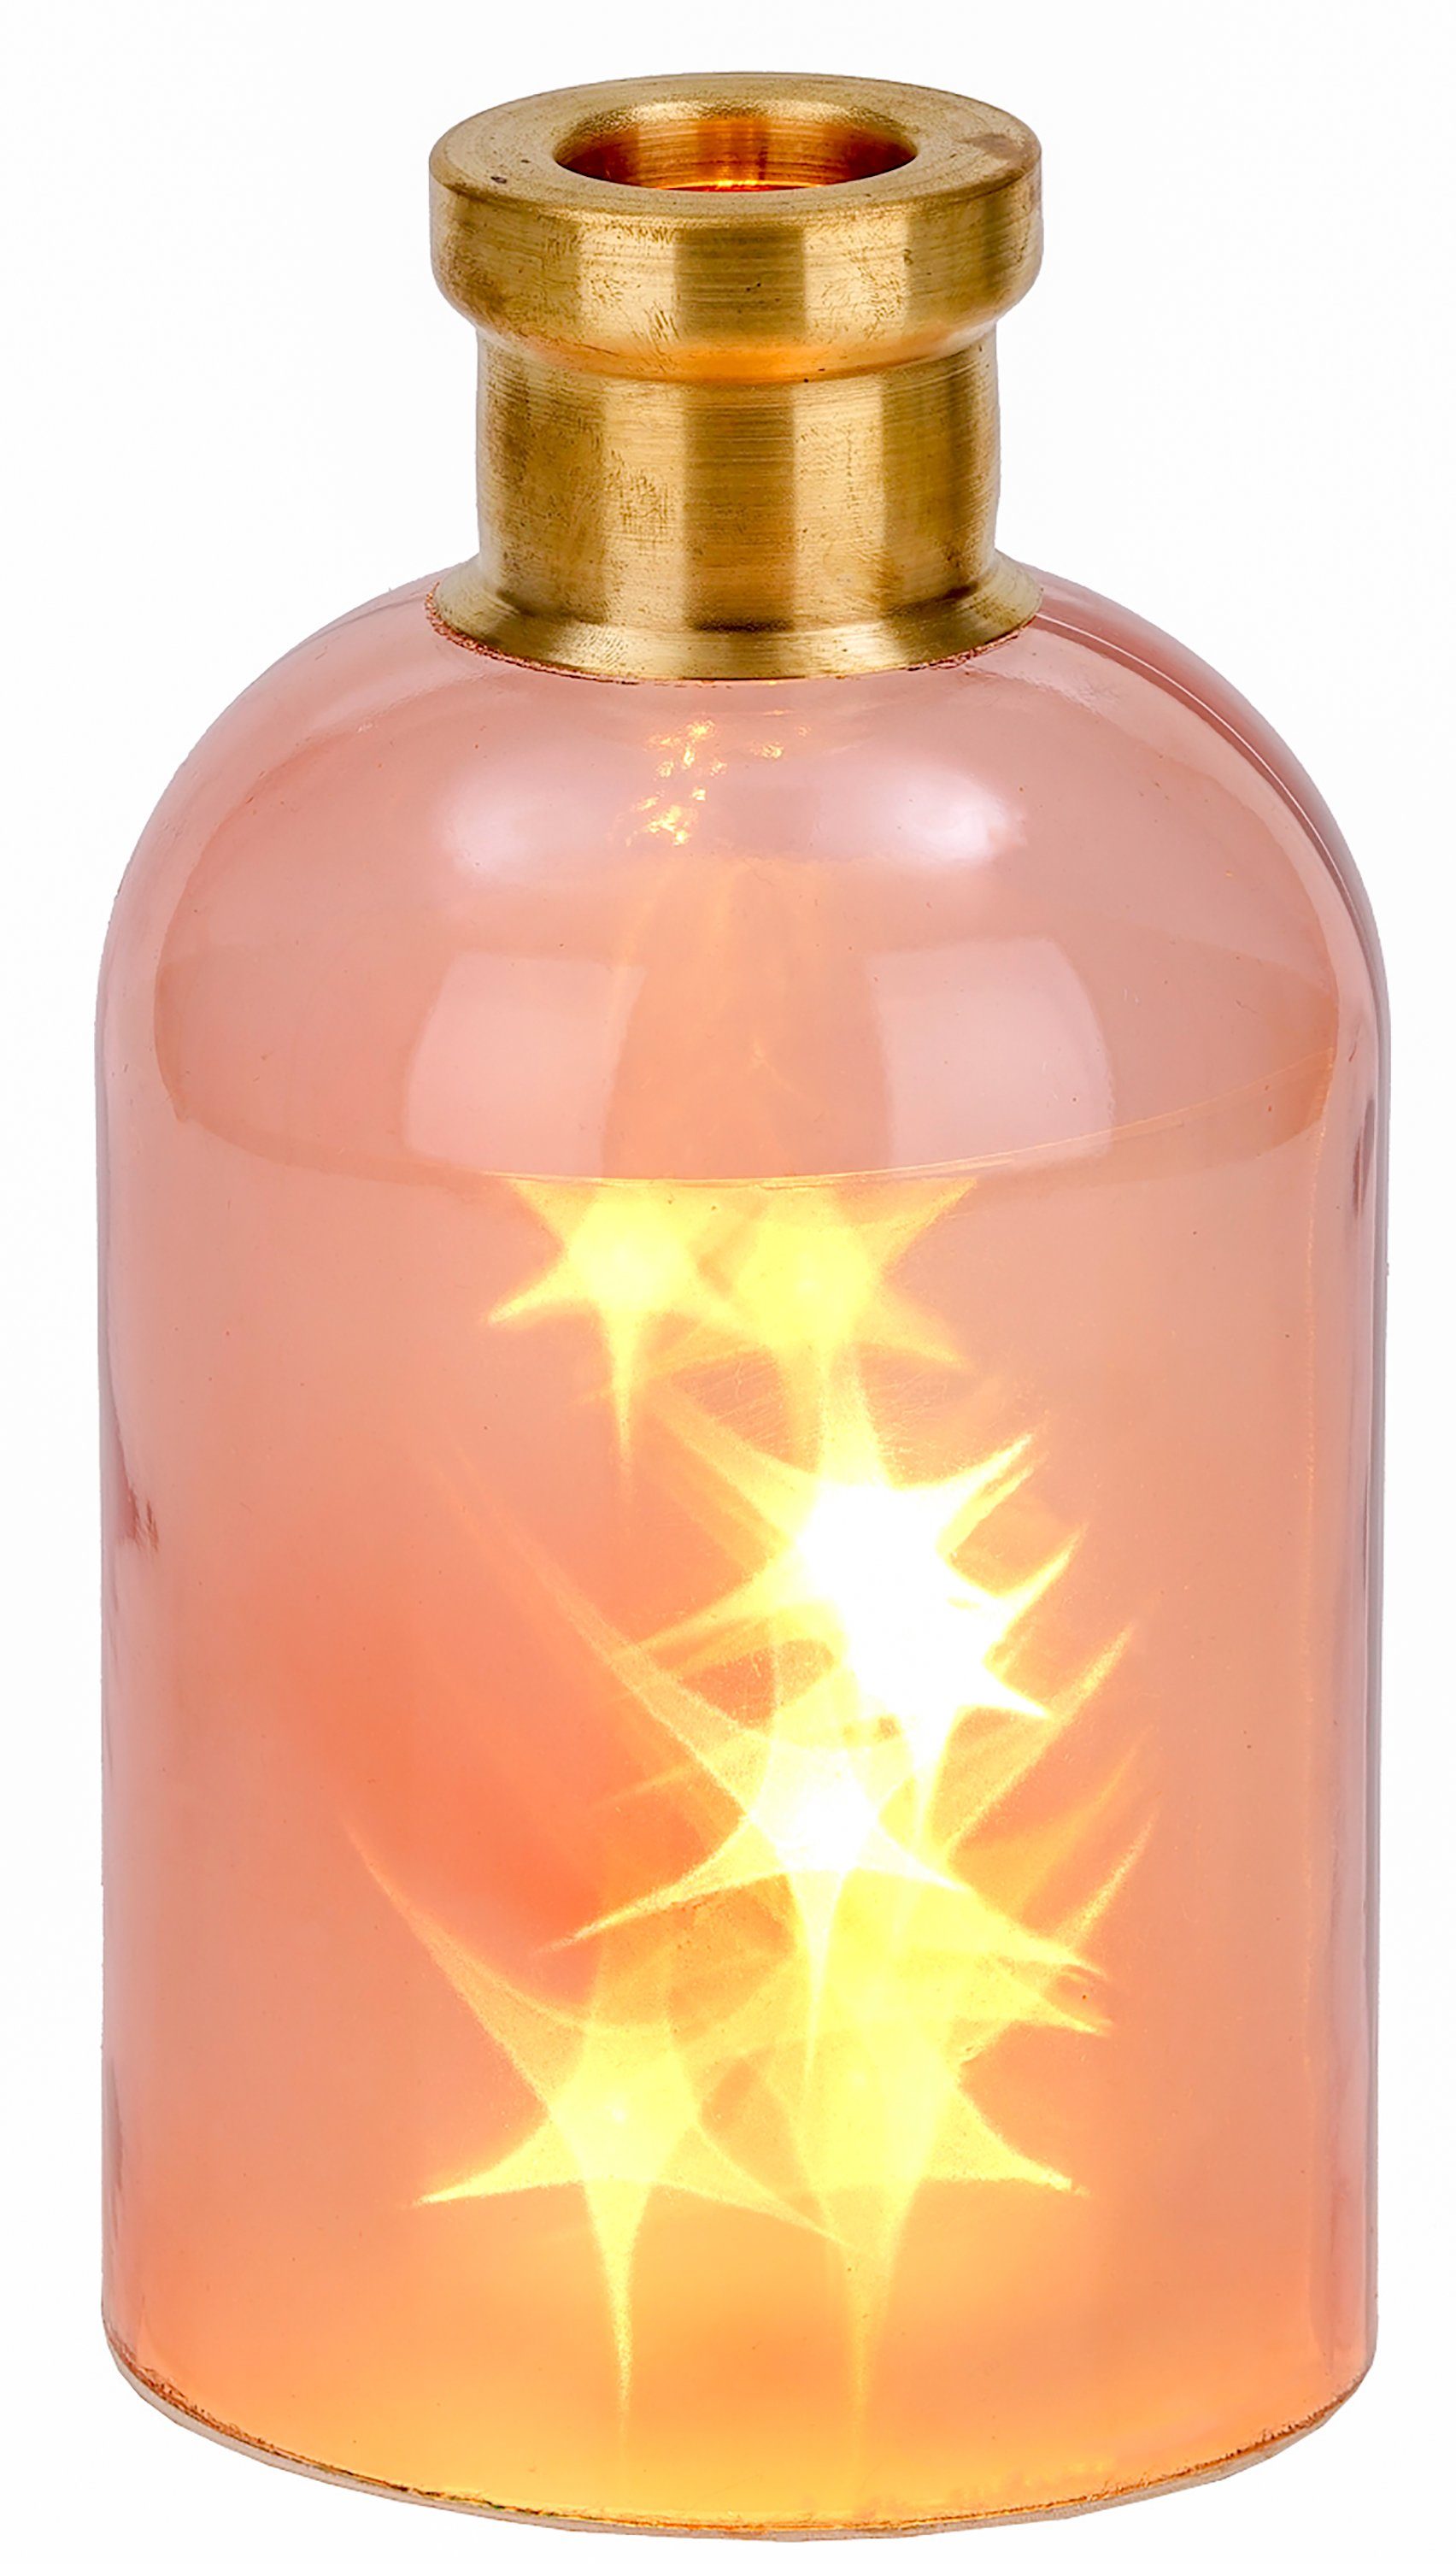 BRUBAKER LED Dekolicht Lichterflasche "Magie" mit 10 LED Sternen, LED Lichterkette, Warmweiß, Dekoleuchte, Party Licht Deko, Höhe 24 cm Rosa